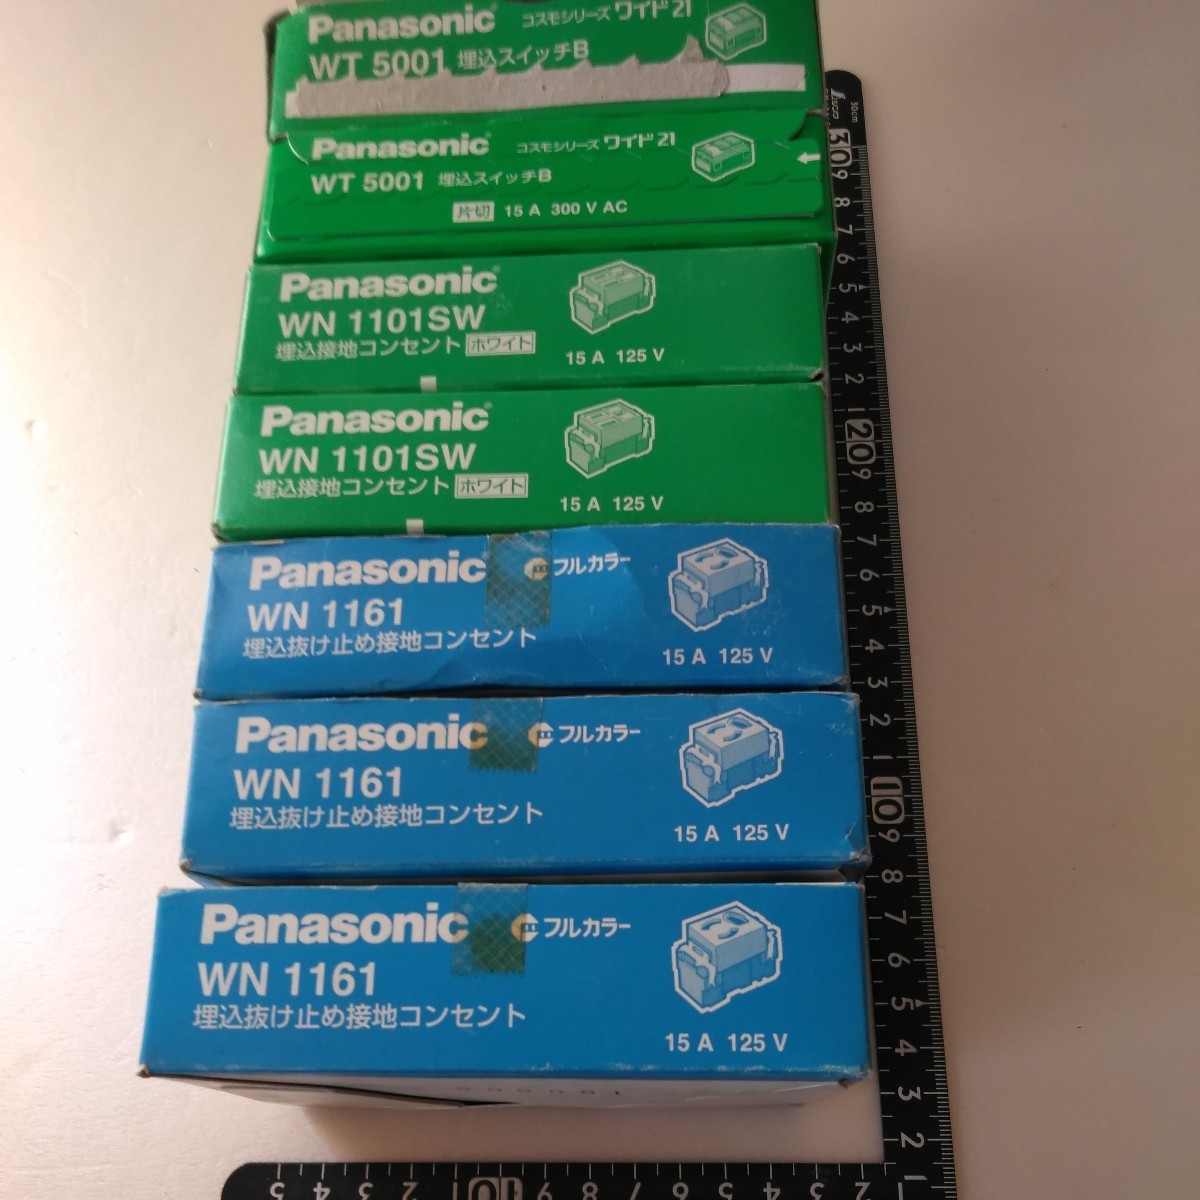 Panasonic WN1161 WN1101SW WT5001 WT5044 全部まとめて 一部抜けあり ゆうパック60 埋め込み 抜け止め 設置 コンセント 埋め込みスイッチの画像1